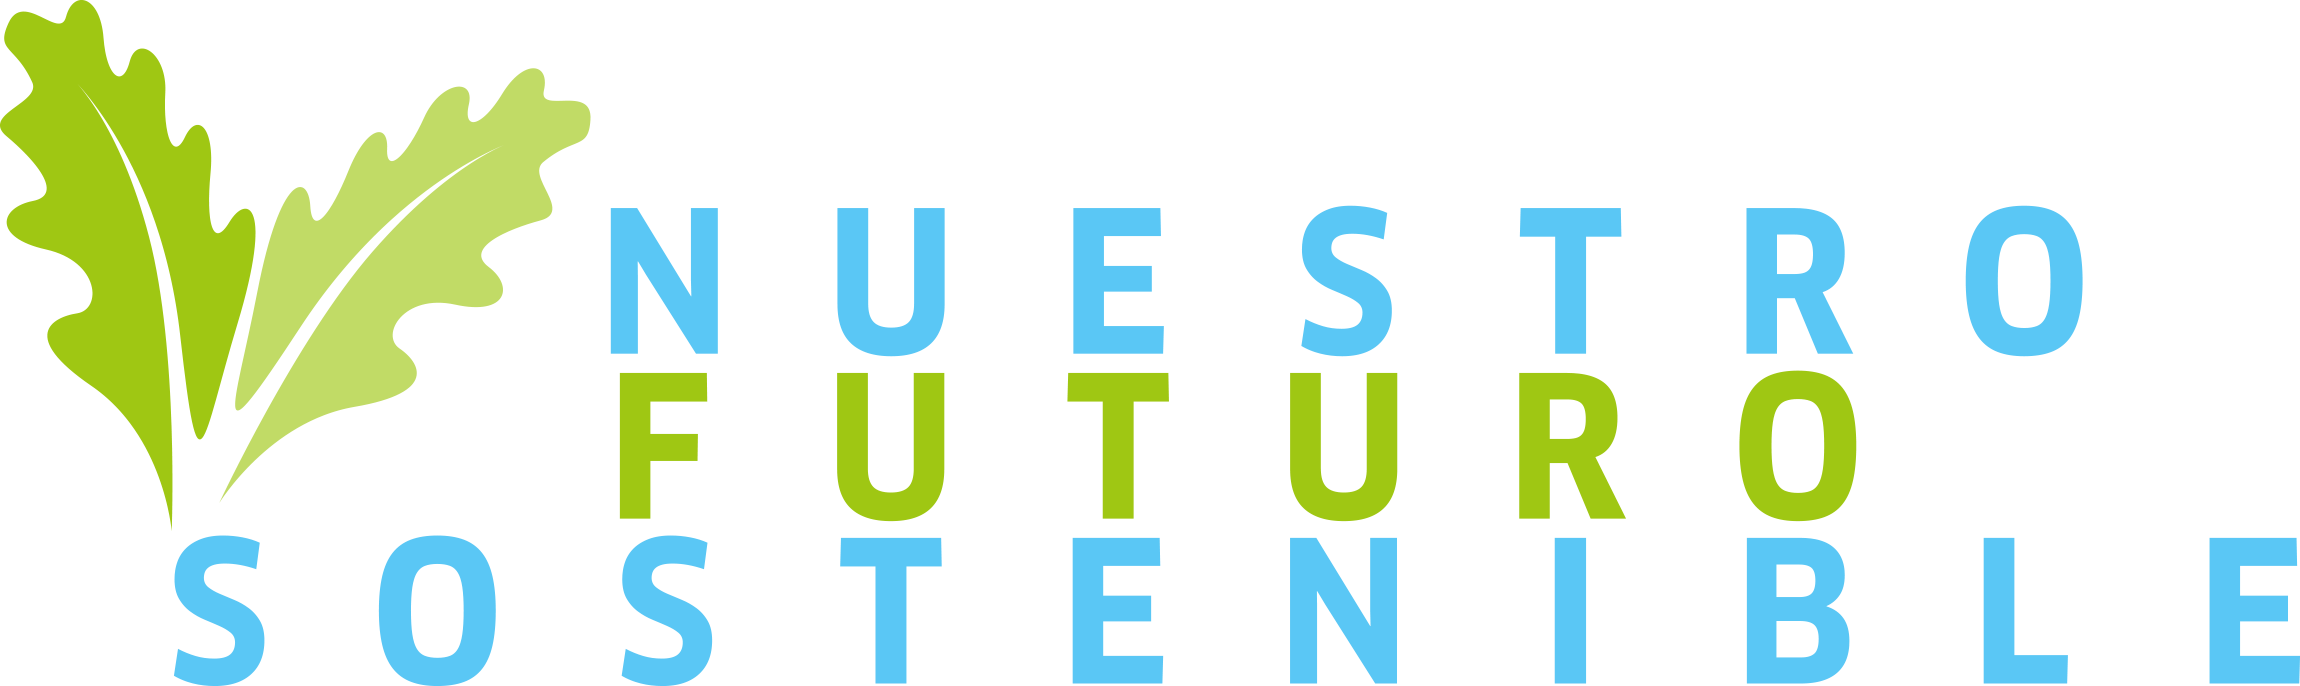 Nuestro futuro sostenible Logo